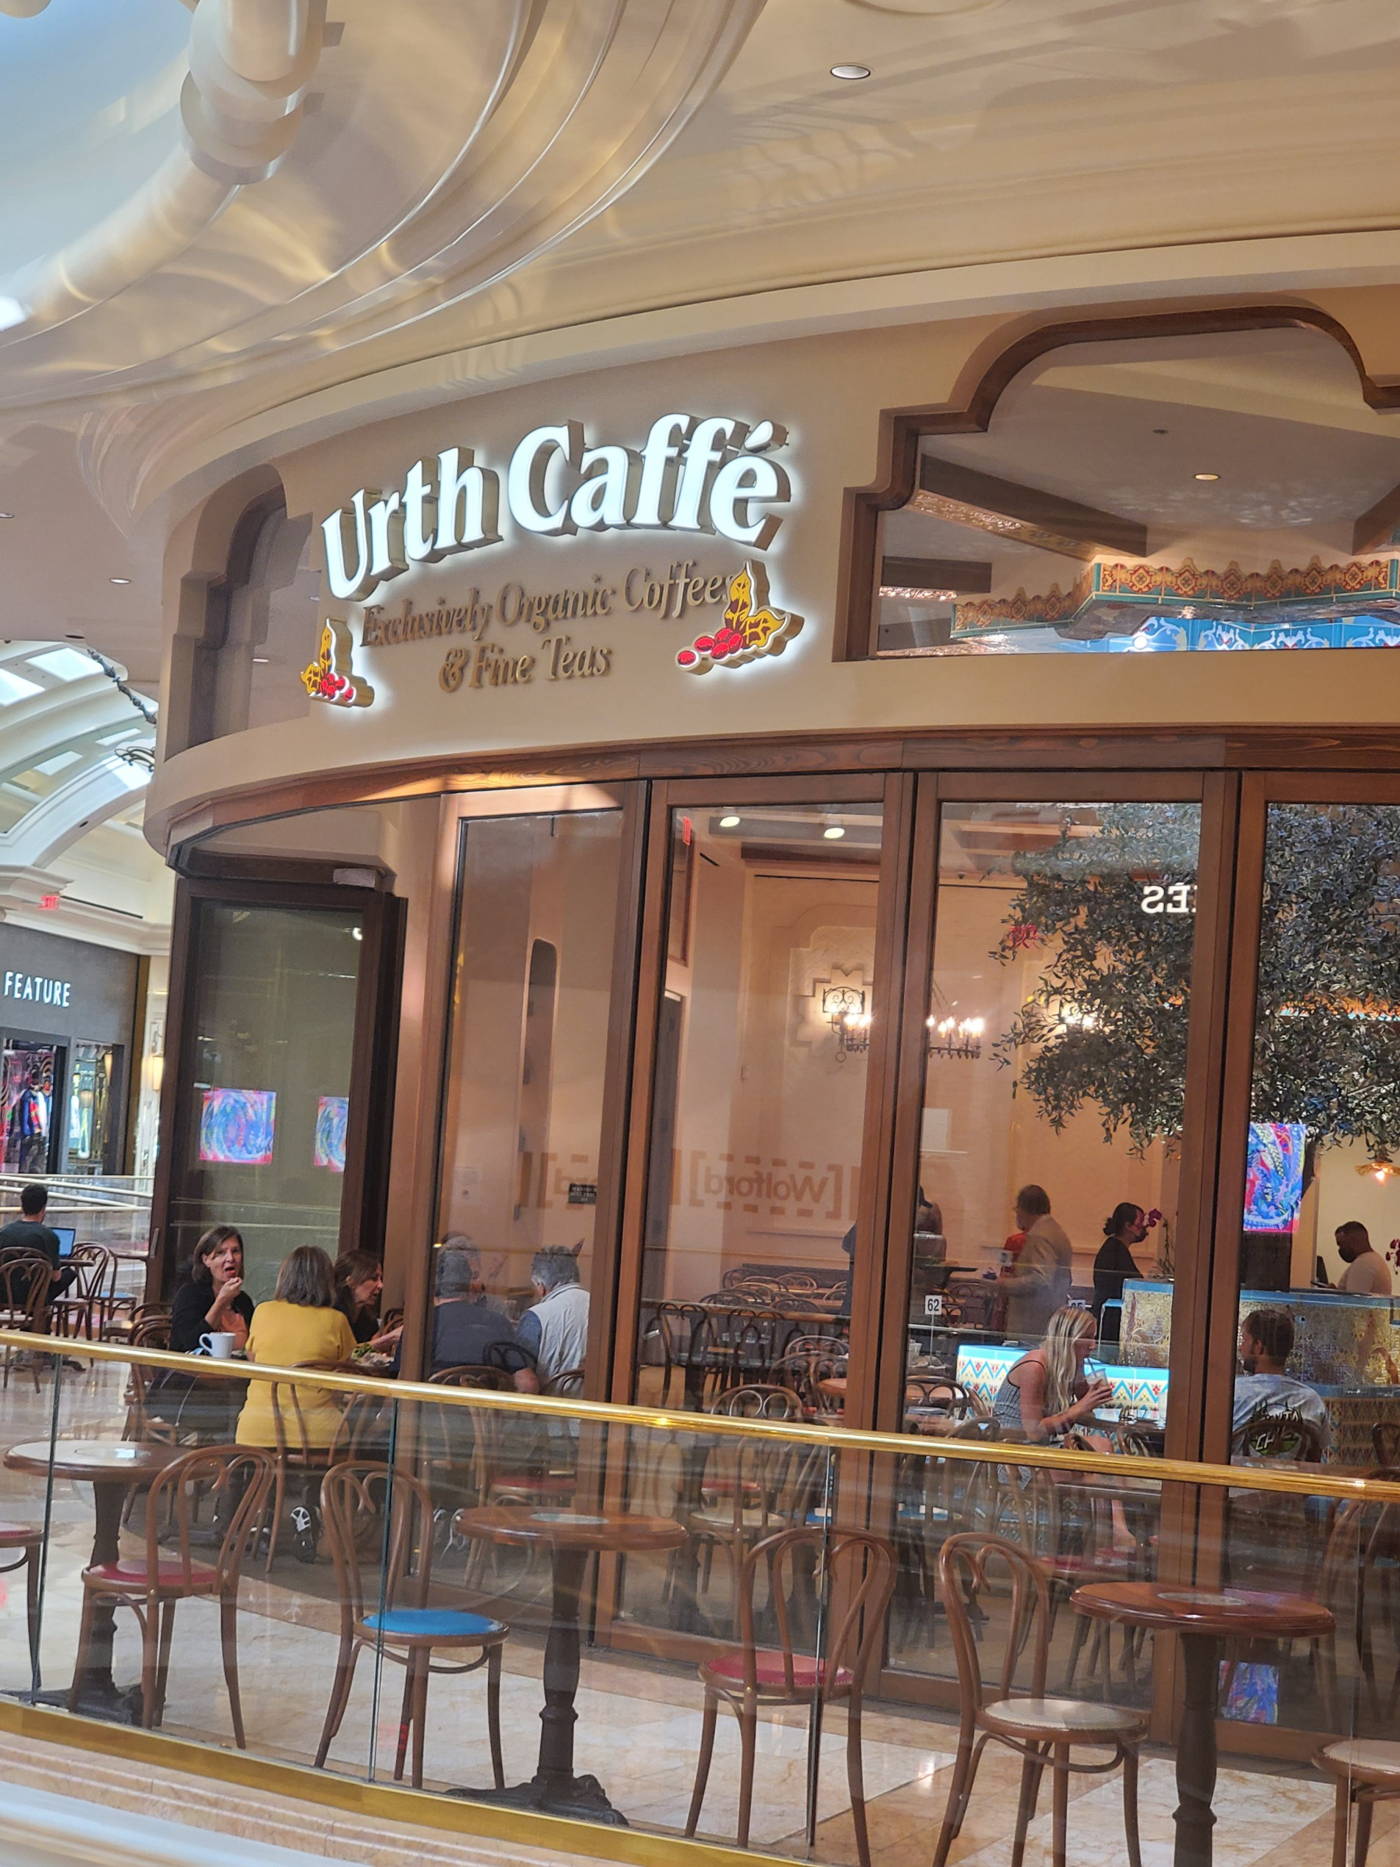 Urth Caffe at Wynn Las Vegas